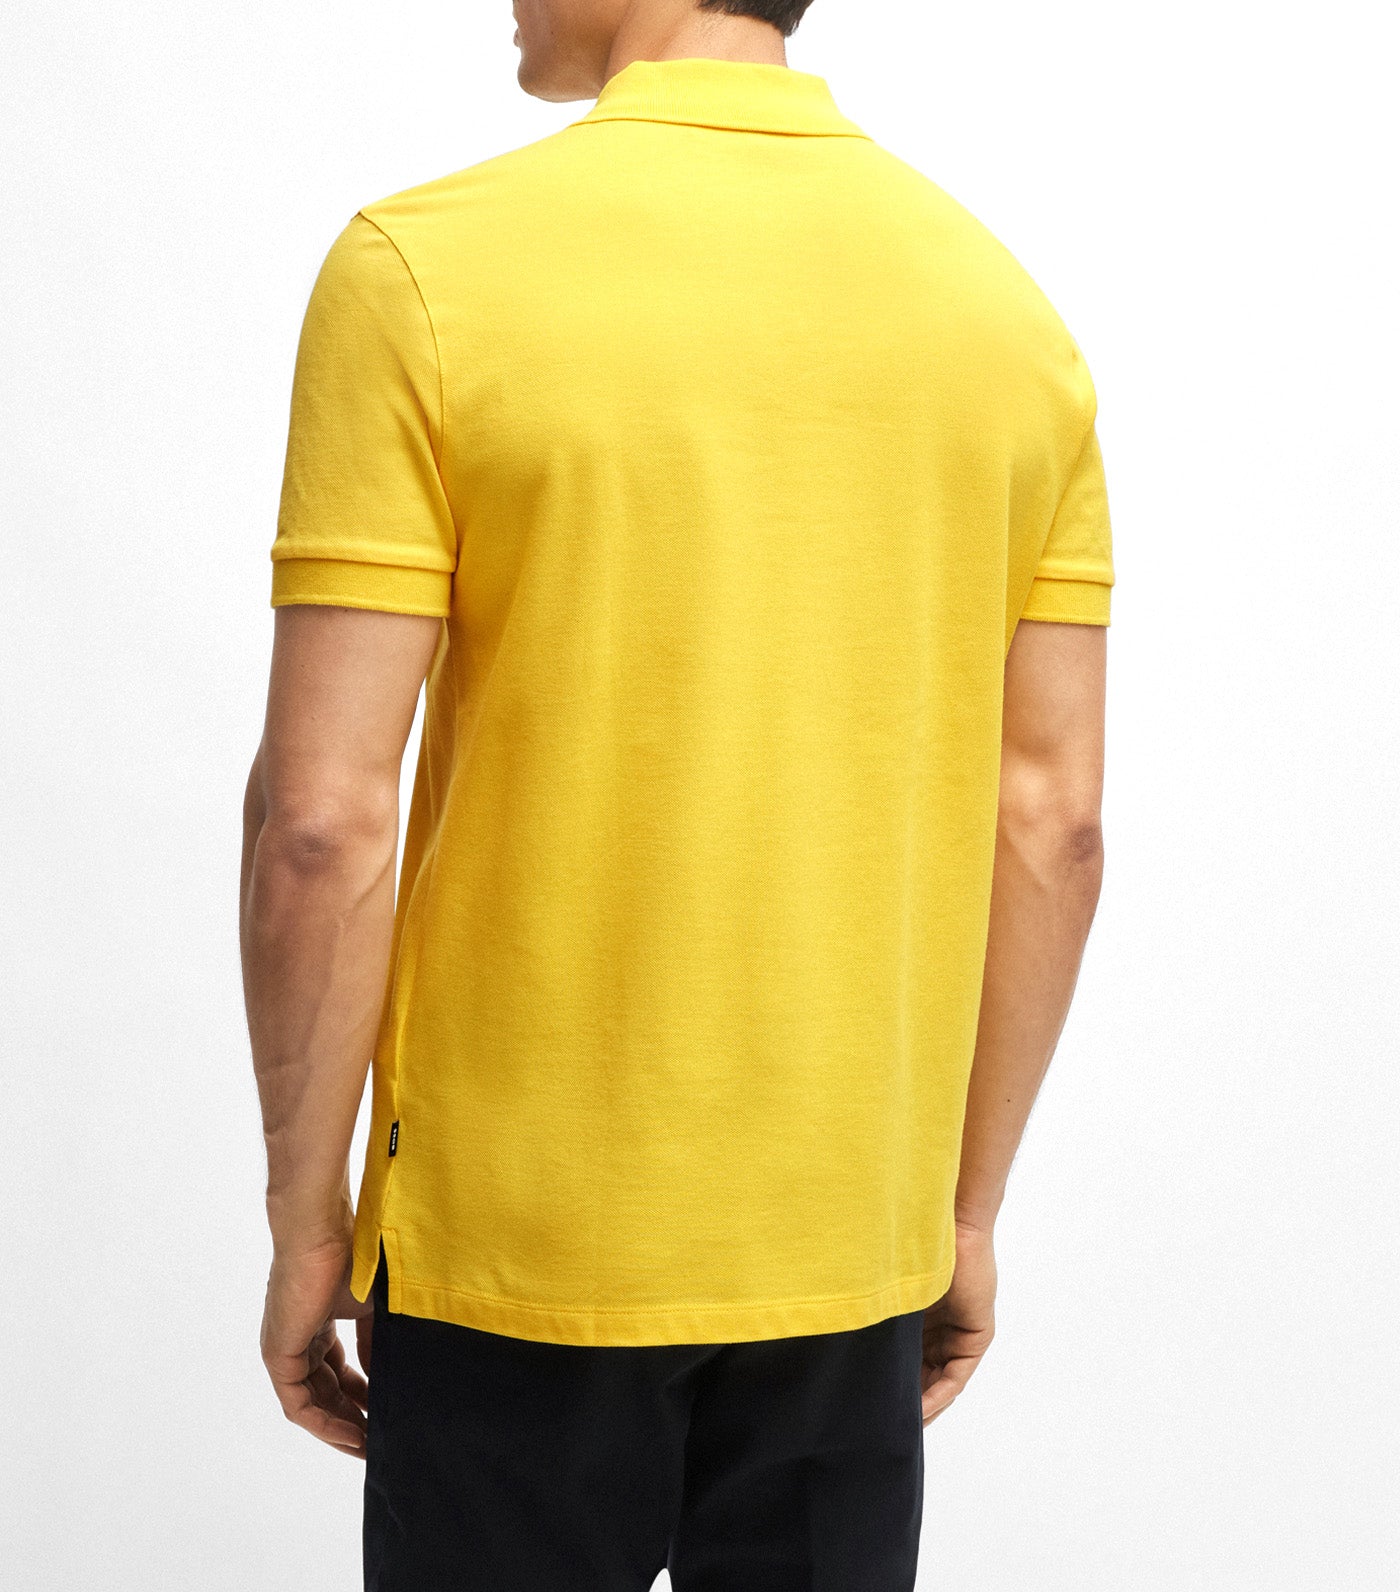 Pallas 41531 Polo Shirt Yellow